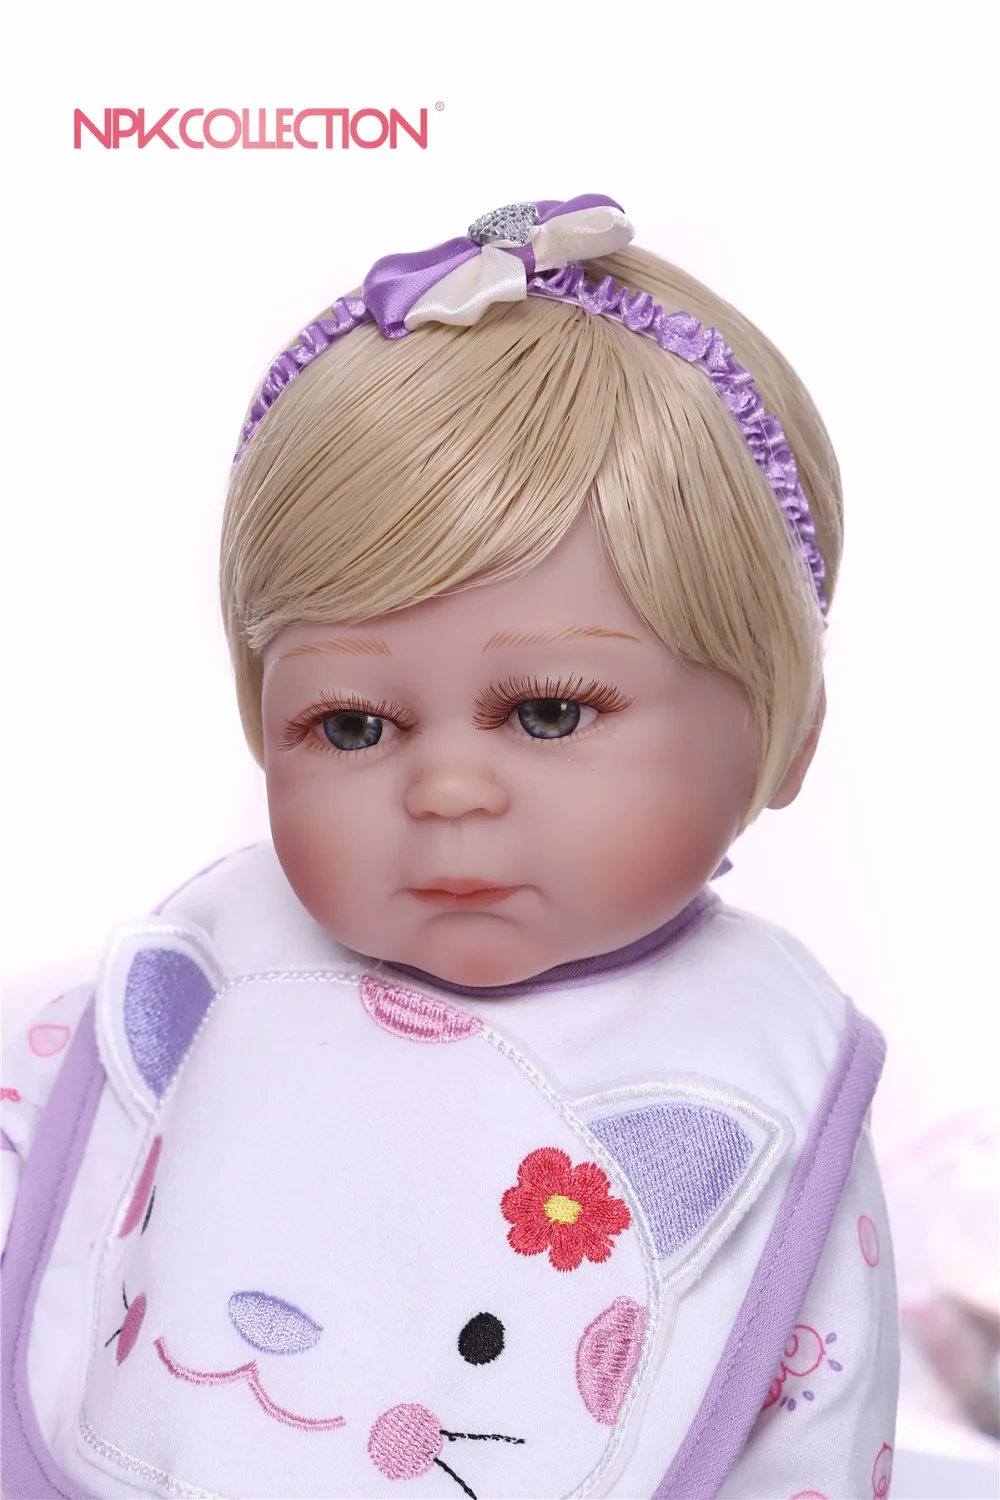 NPK 46 см красный reborn куклы Мягкие силиконовые детские куклы bebe Принцесса reborn Красивая фиолетовая одежда сердце плюшевая кукла в подарок детские игрушки